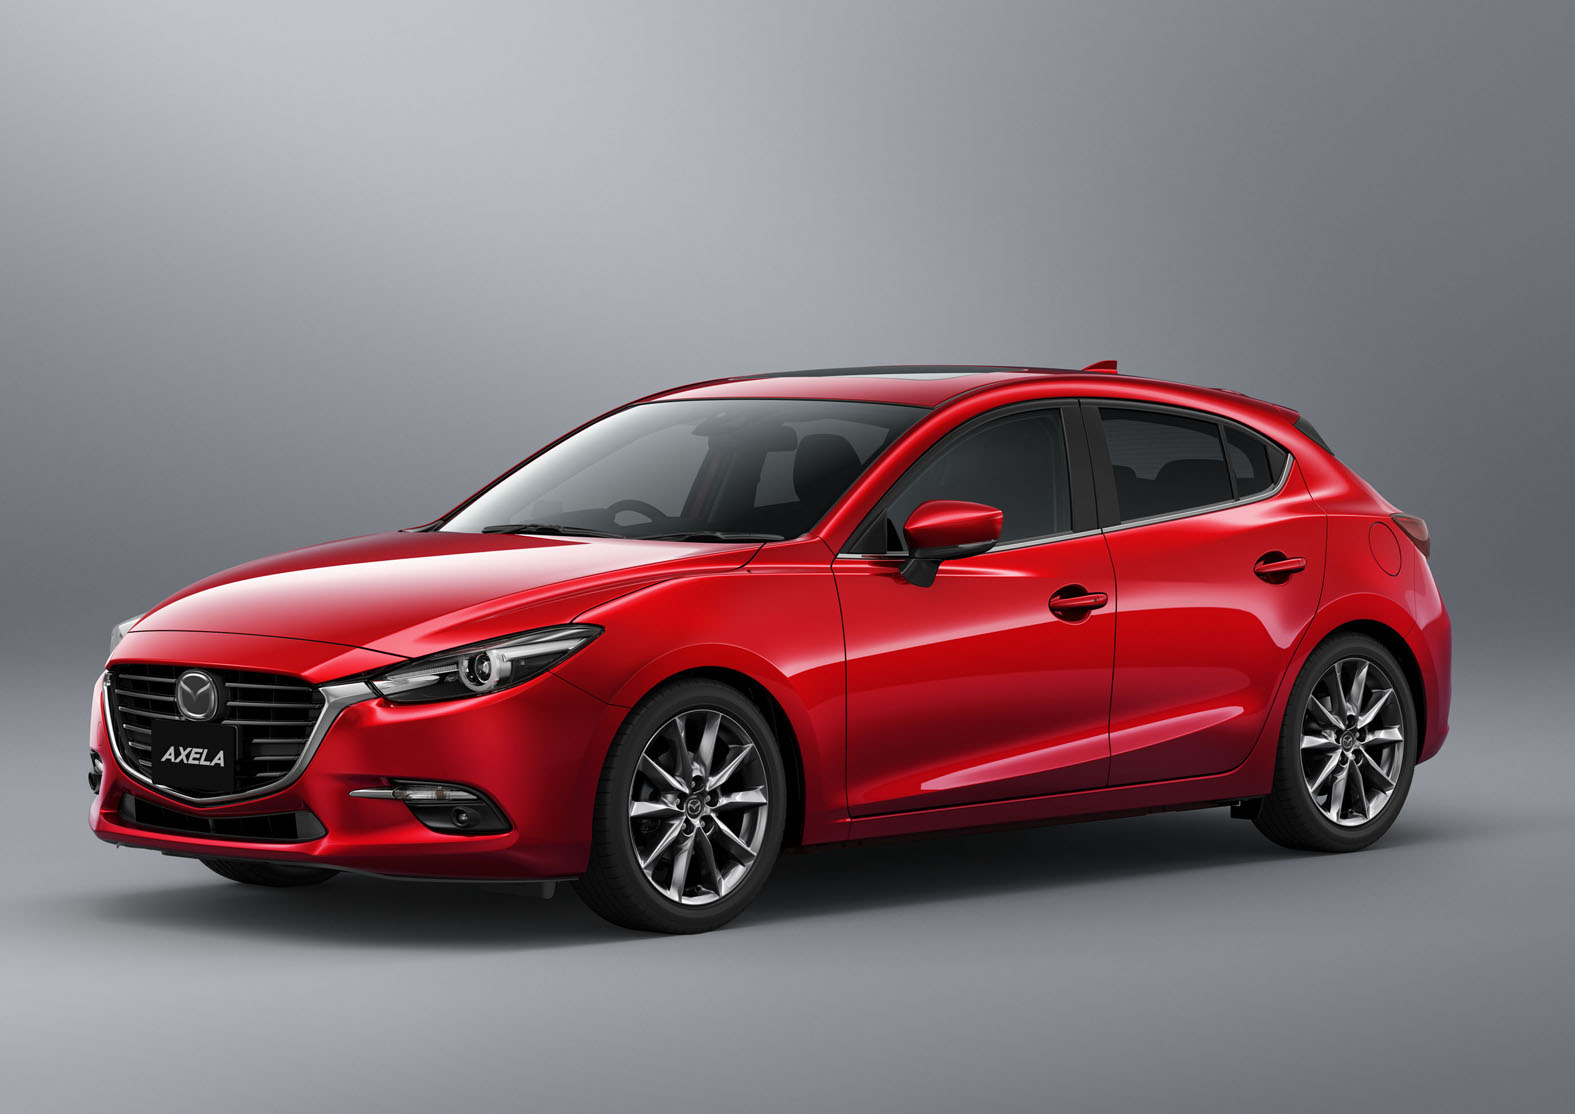 2017_Mazda_3_Facelift (73)